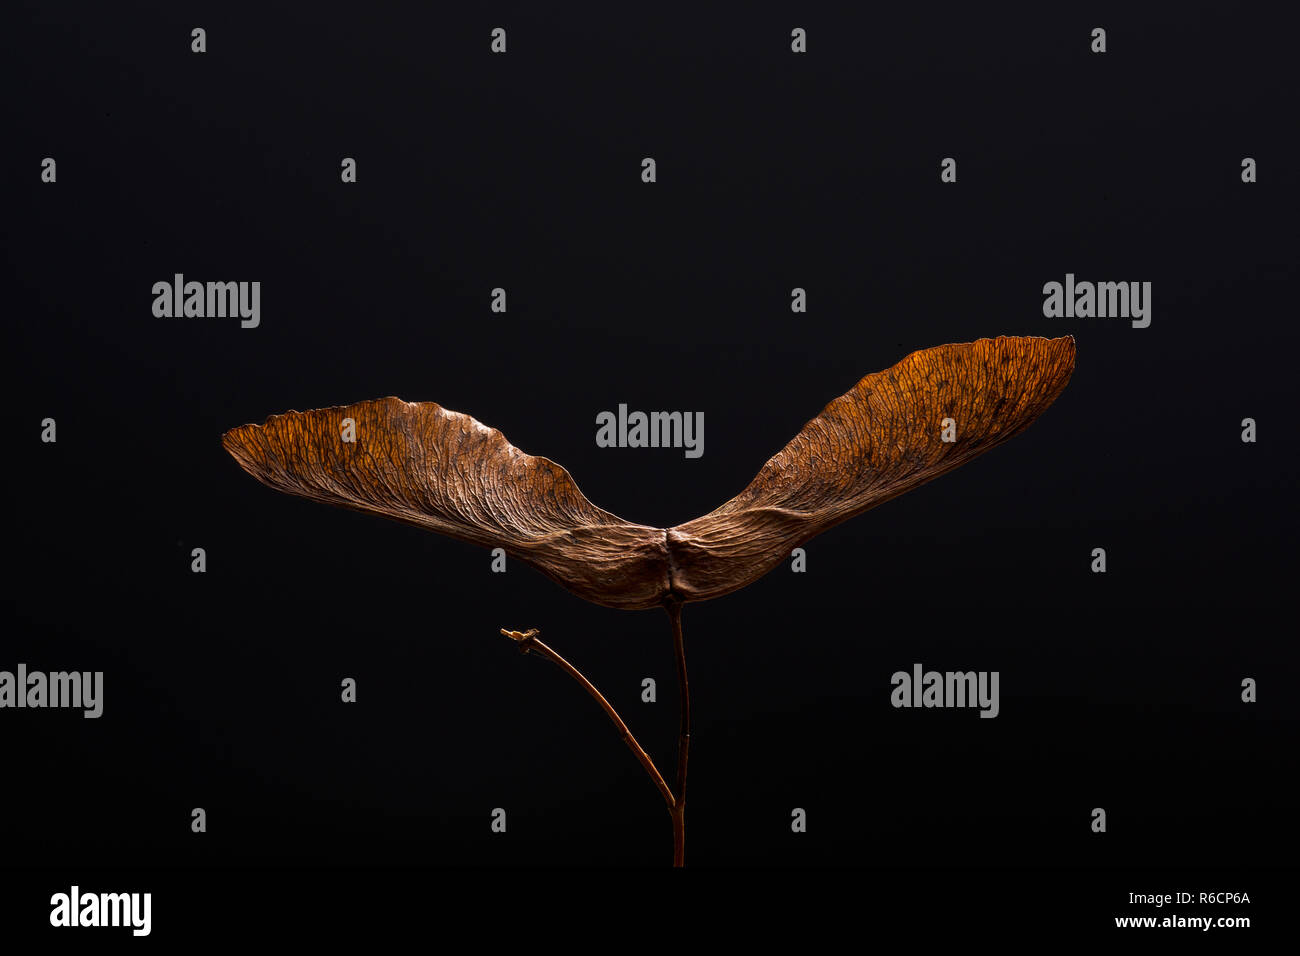 Imagen de color marrón, secos spinning sycamore semilla en estrecha con fondo negro Foto de stock